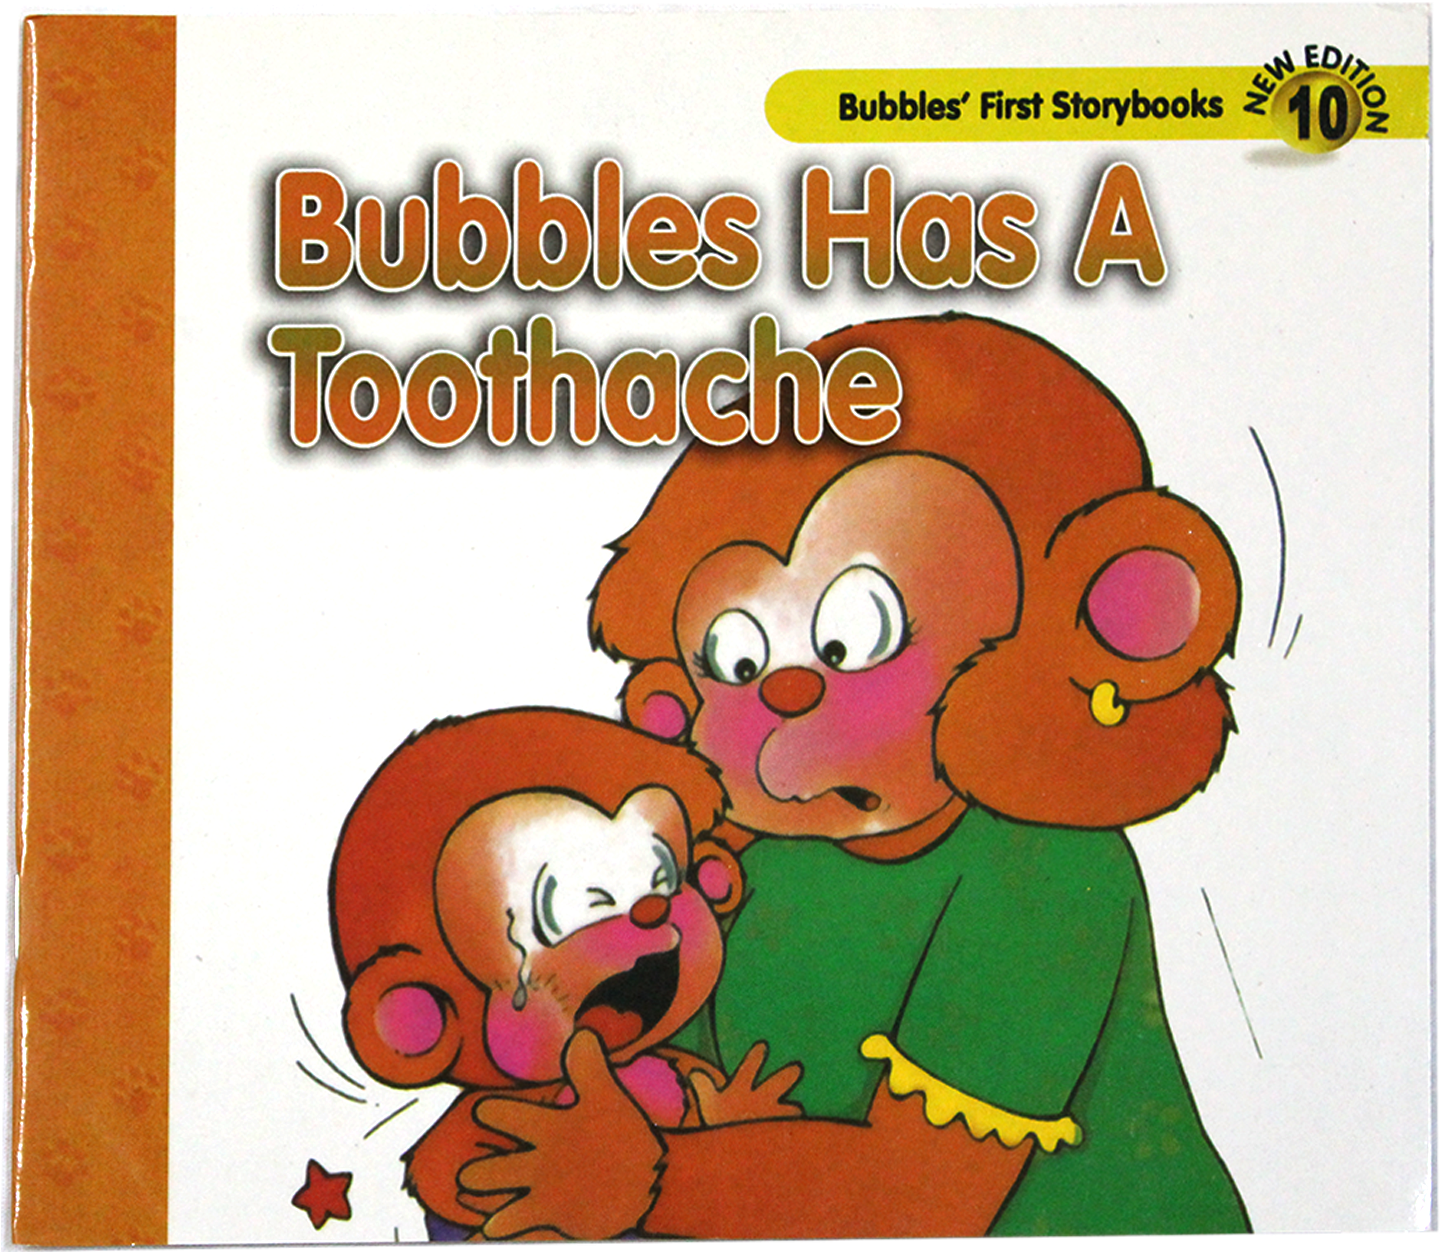 Shop - Bubbles Has A Toothache (1500x1500)